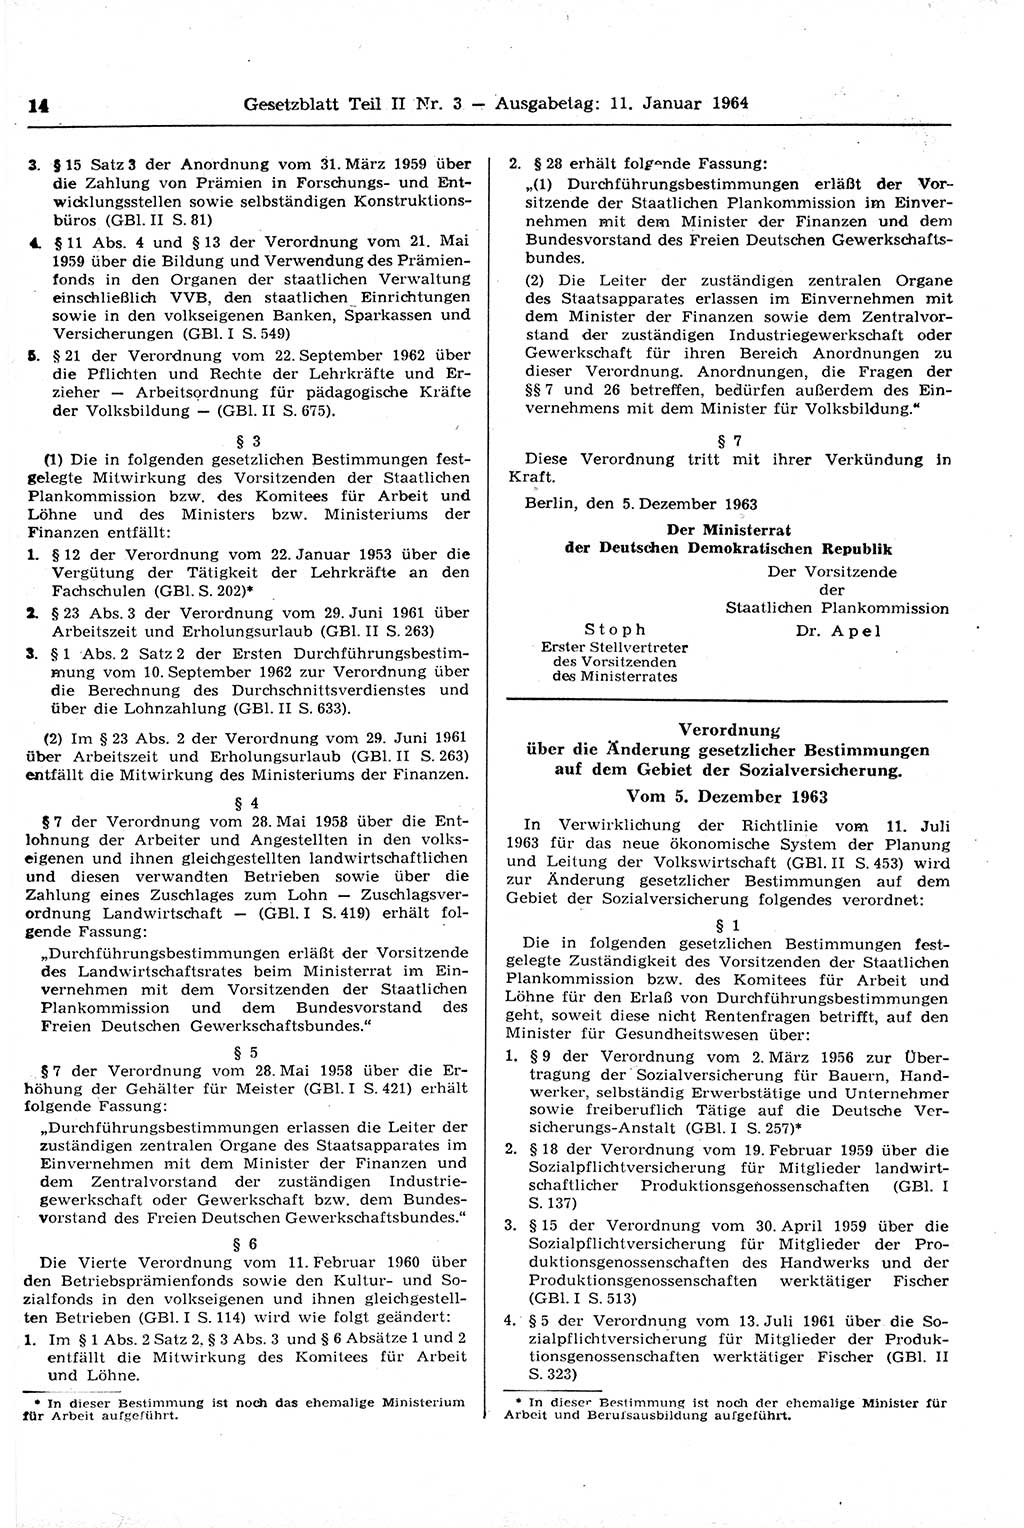 Gesetzblatt (GBl.) der Deutschen Demokratischen Republik (DDR) Teil ⅠⅠ 1964, Seite 14 (GBl. DDR ⅠⅠ 1964, S. 14)